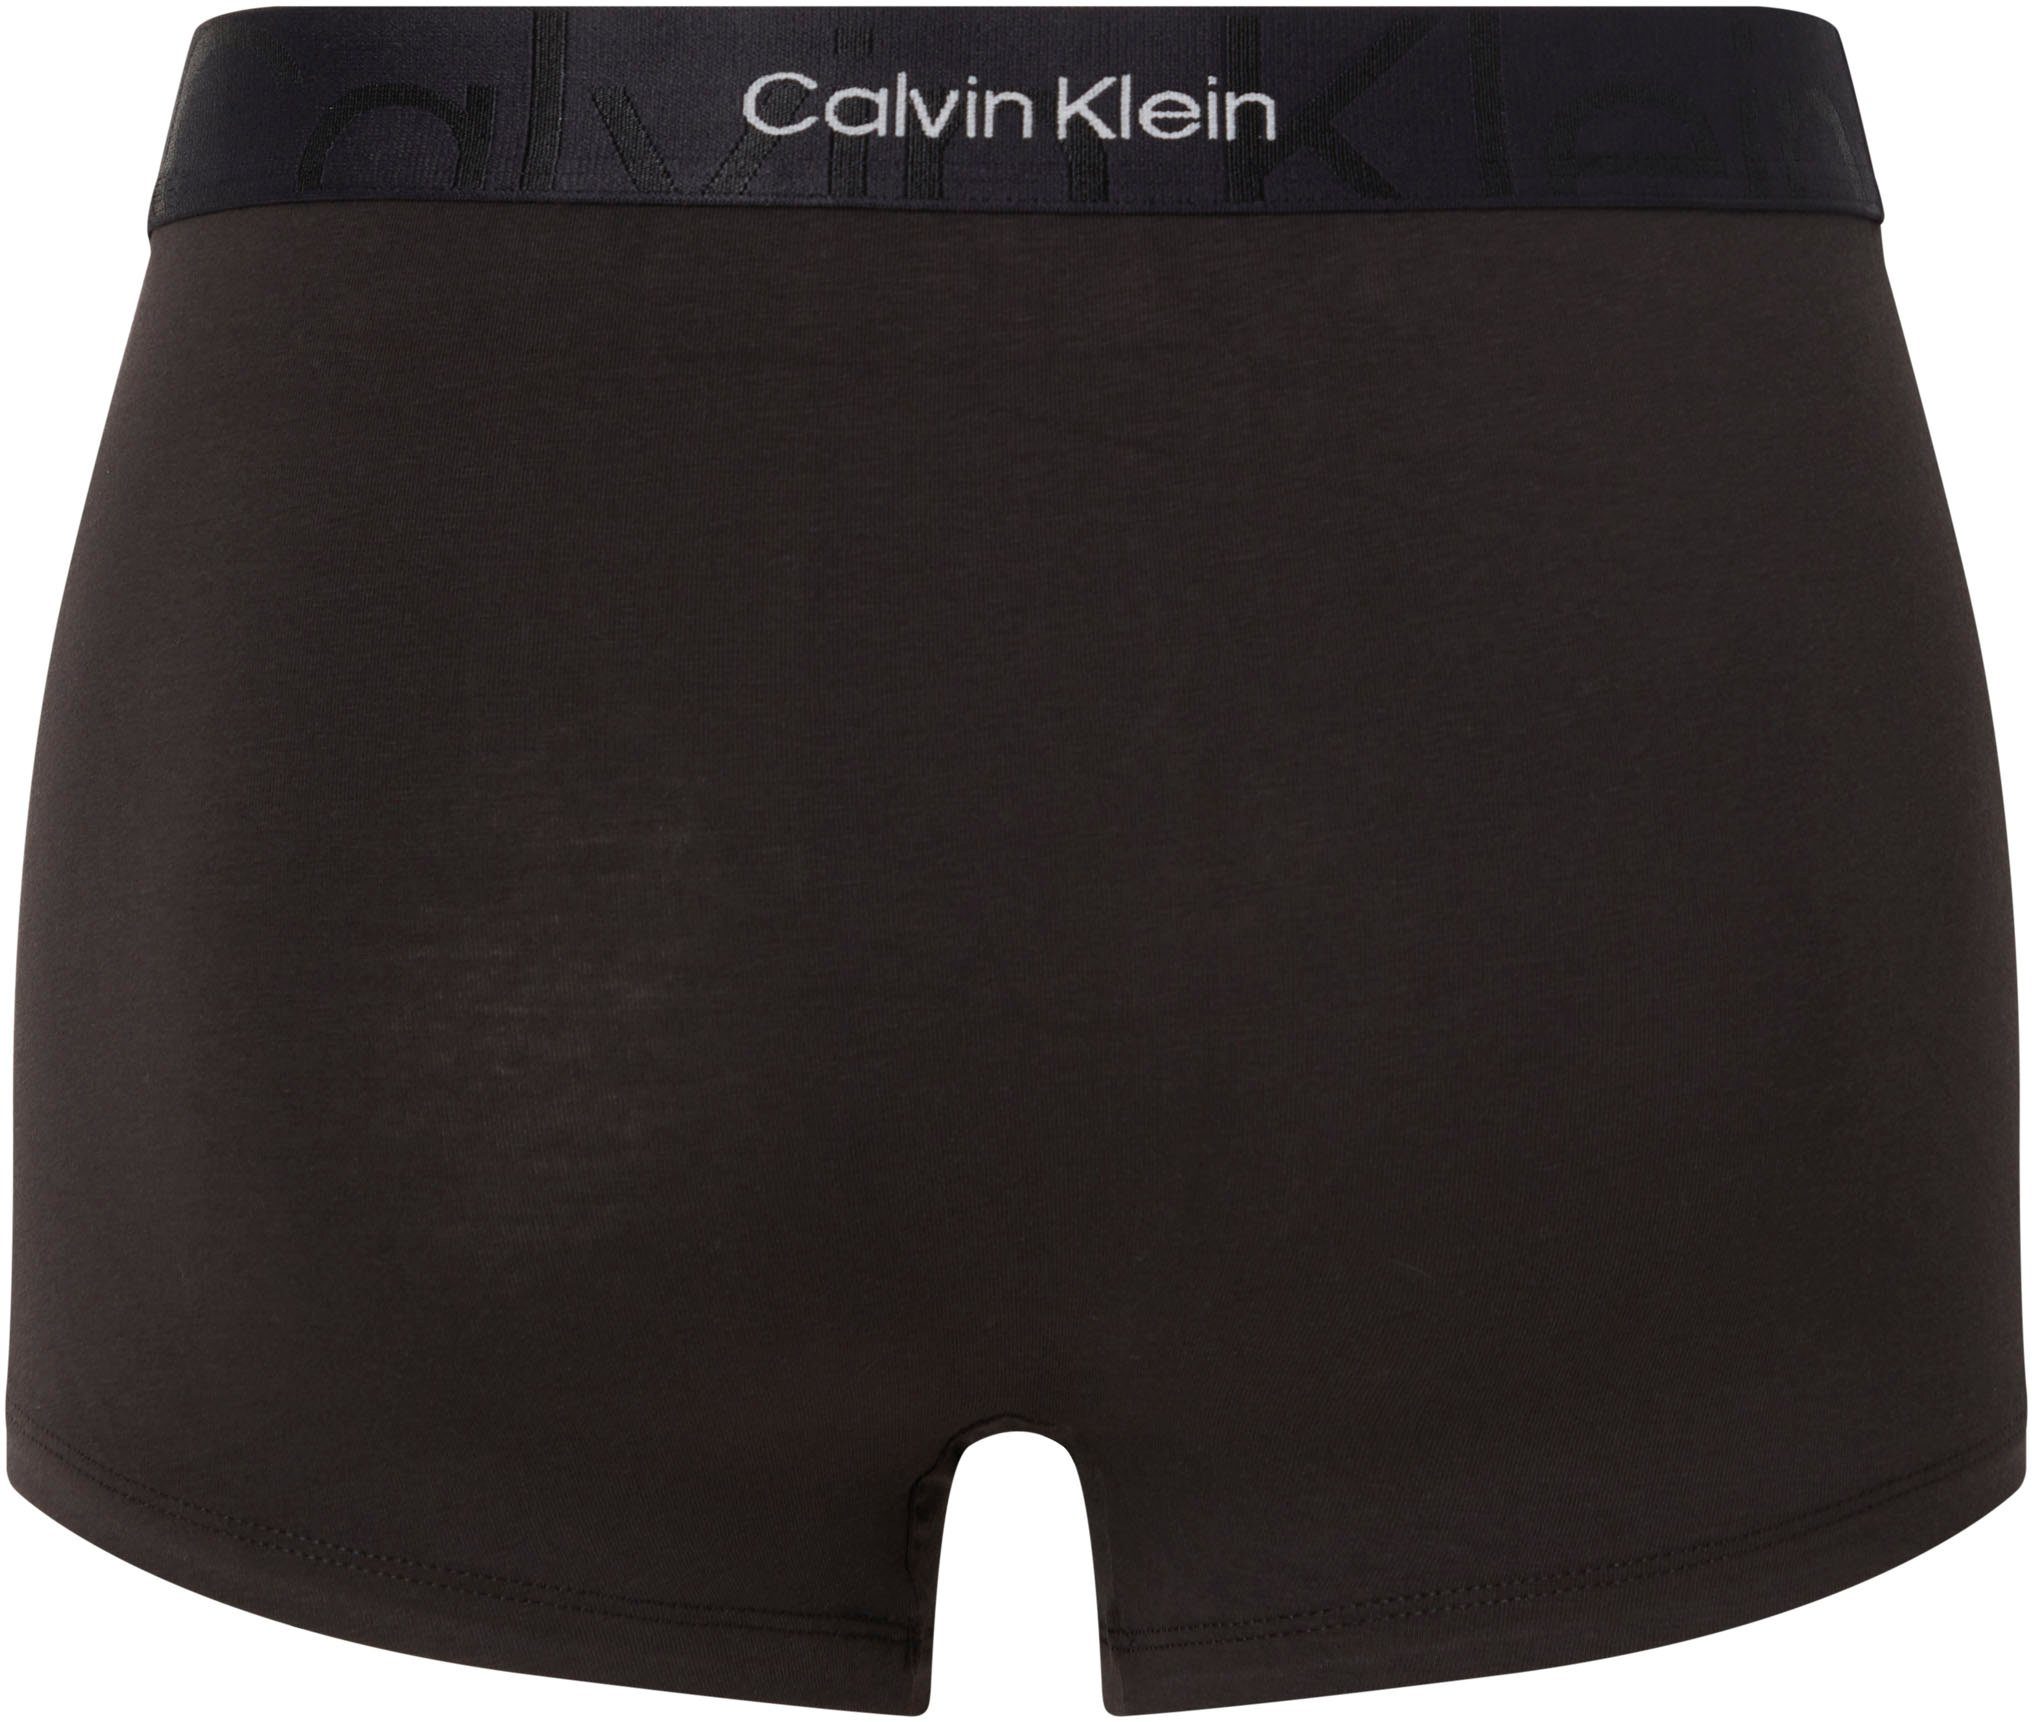 Calvin Klein Logoschriftzug Boxer Underwear Wäschebund schwarz mit am